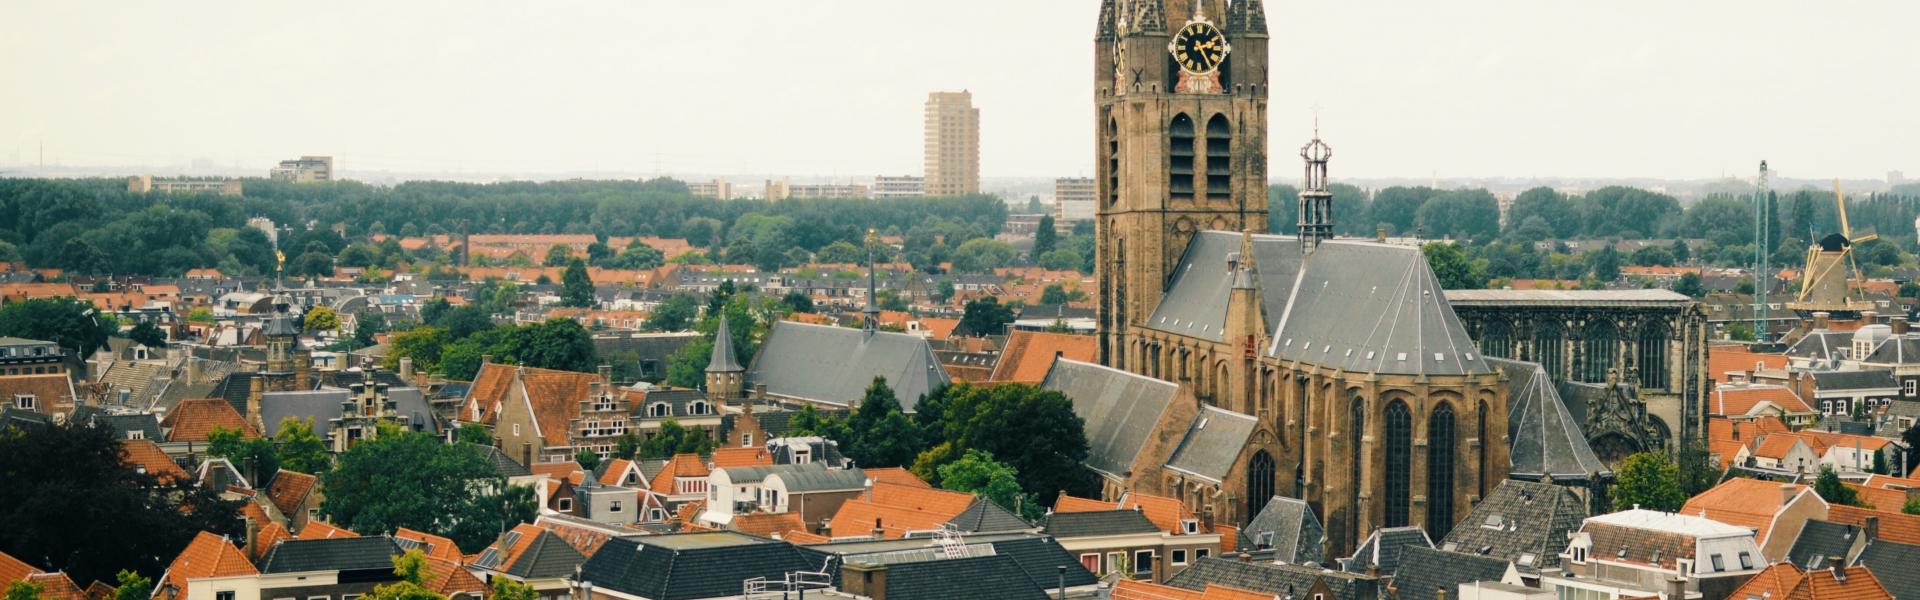 Delft Scenic View